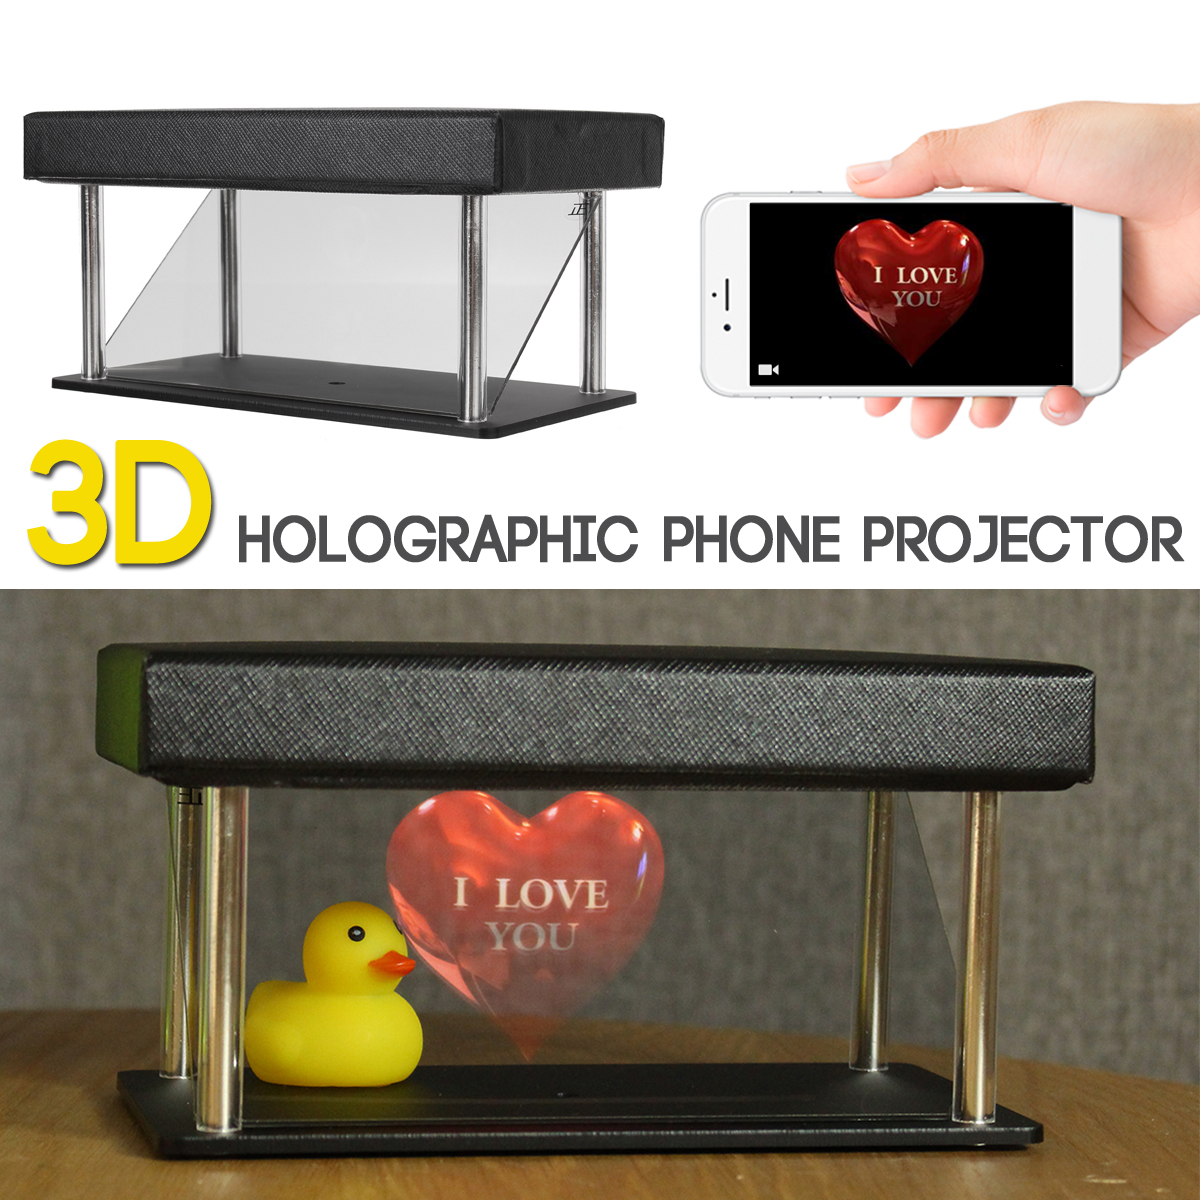 

Мобильный телефон 3D голографическая проекция Коробка 180 градусов Проектор (скрытая версия) для телефонов до 6,5 дюймов